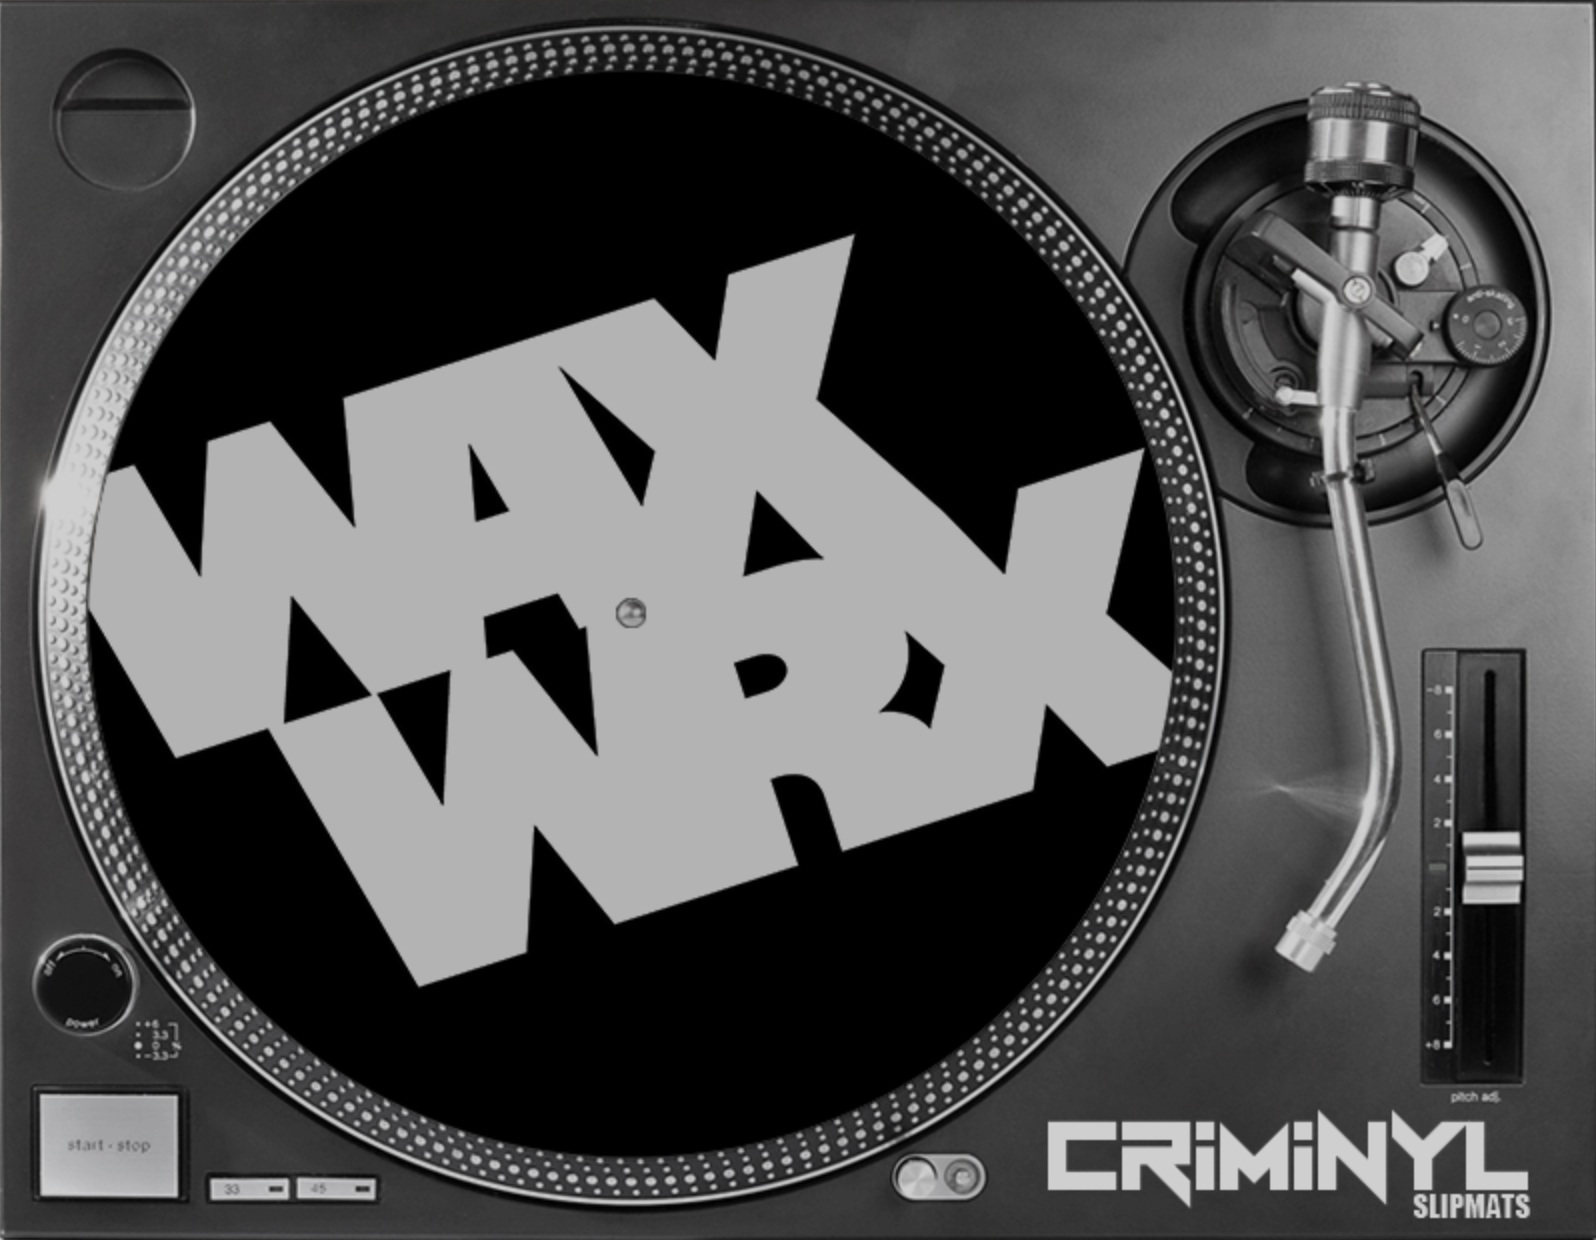 waxwrx mats